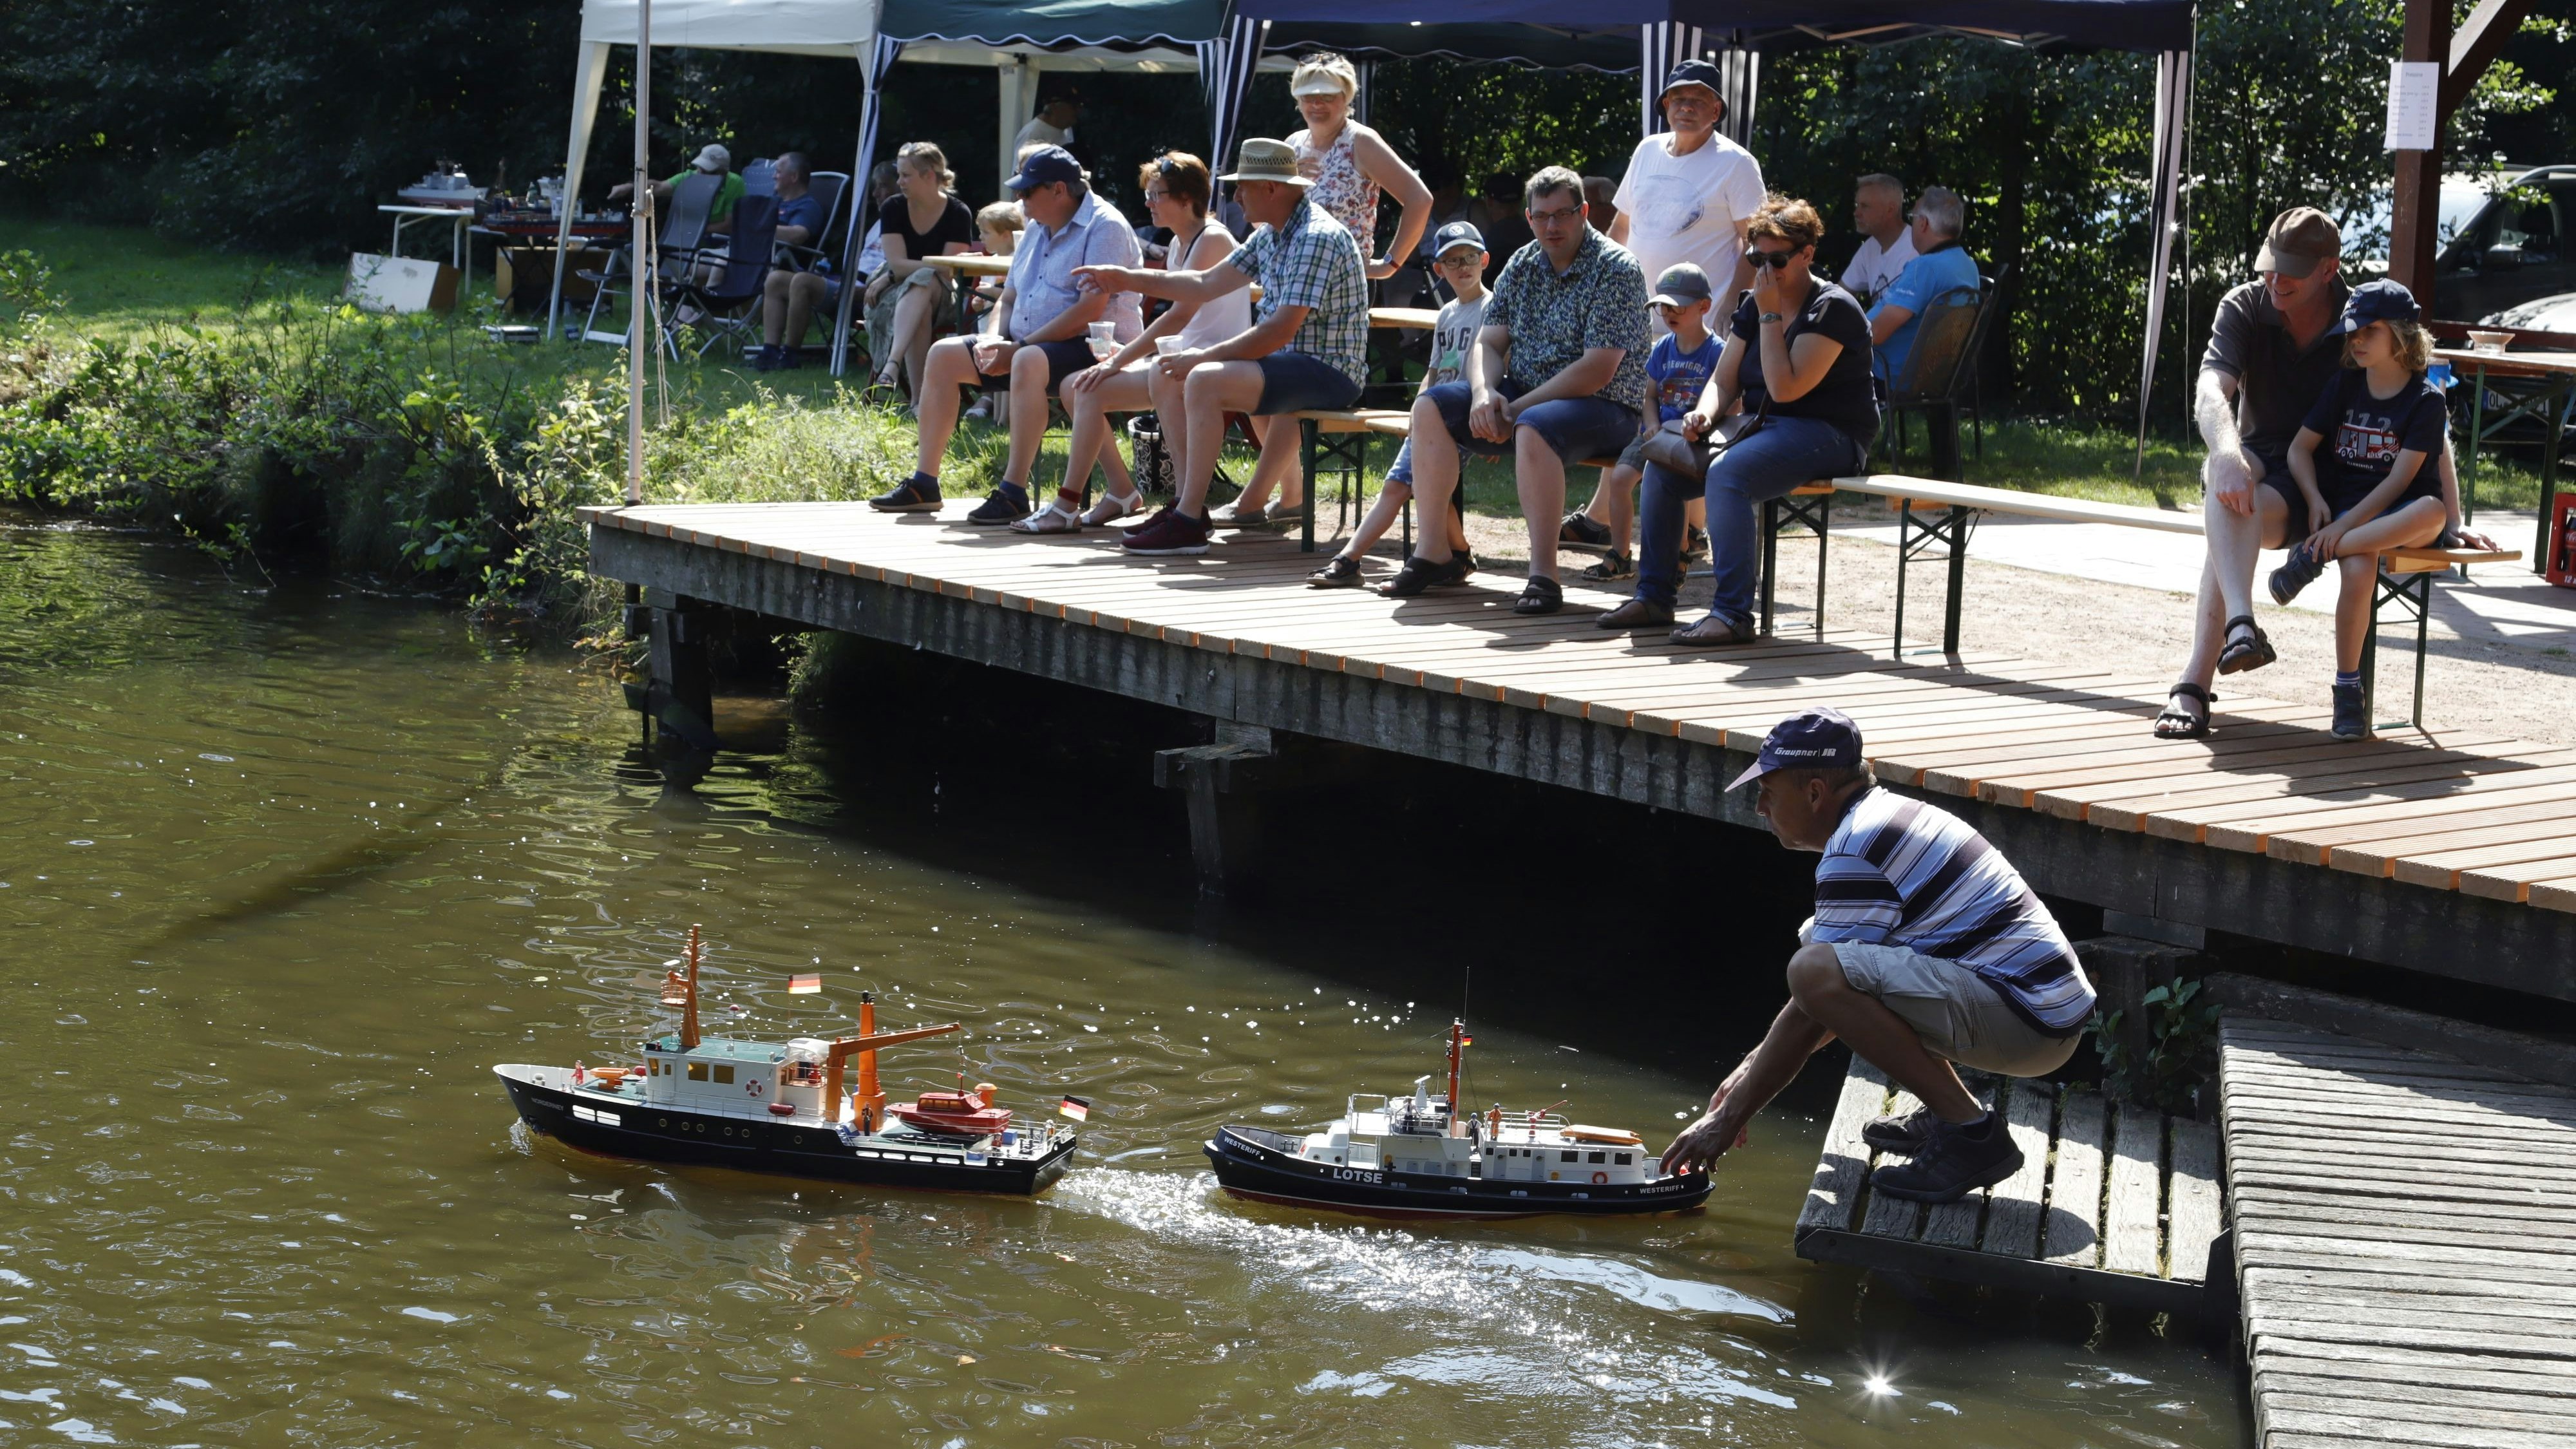 Kleine Boote auf großem Gewässer: An der Burgwiese präsentierten die Schiffseigner ihre Modelle beim Schaufahren des Schiffsmodellbauclubs Hansestadt Friesoythe. Foto: C. Passmann